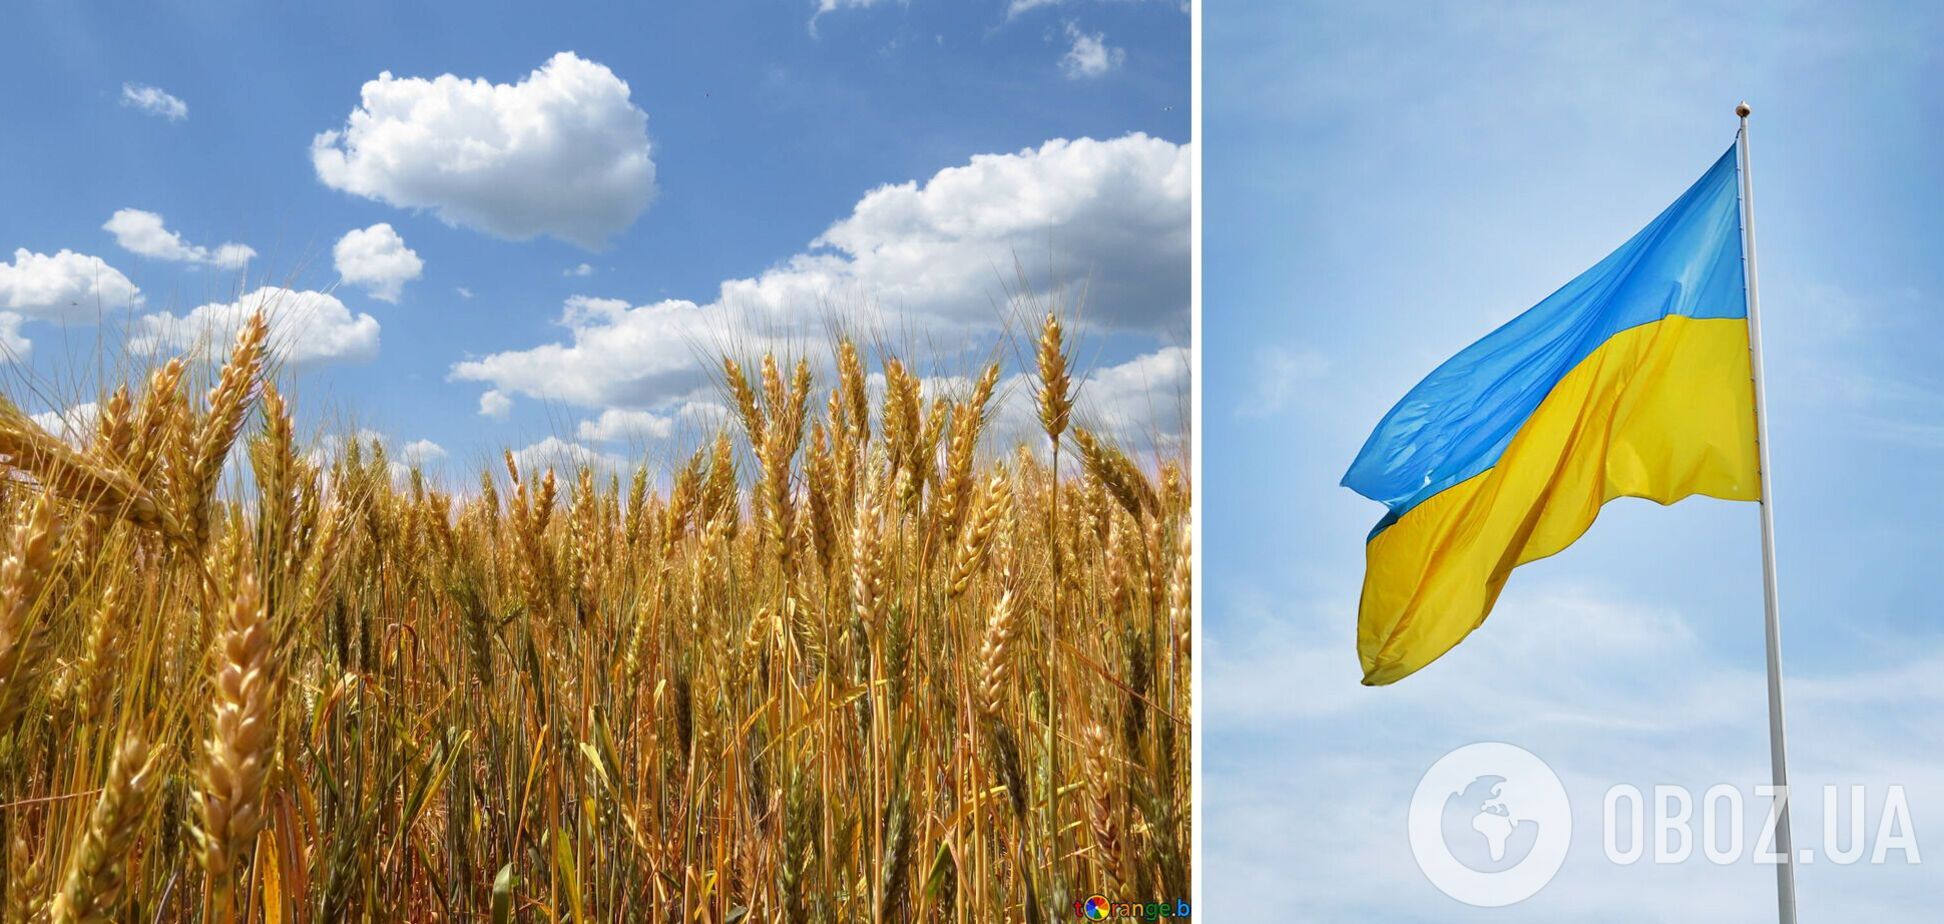 Українська агропромисловість зазнала величезних прямих збитків через розв'язану Росією війну